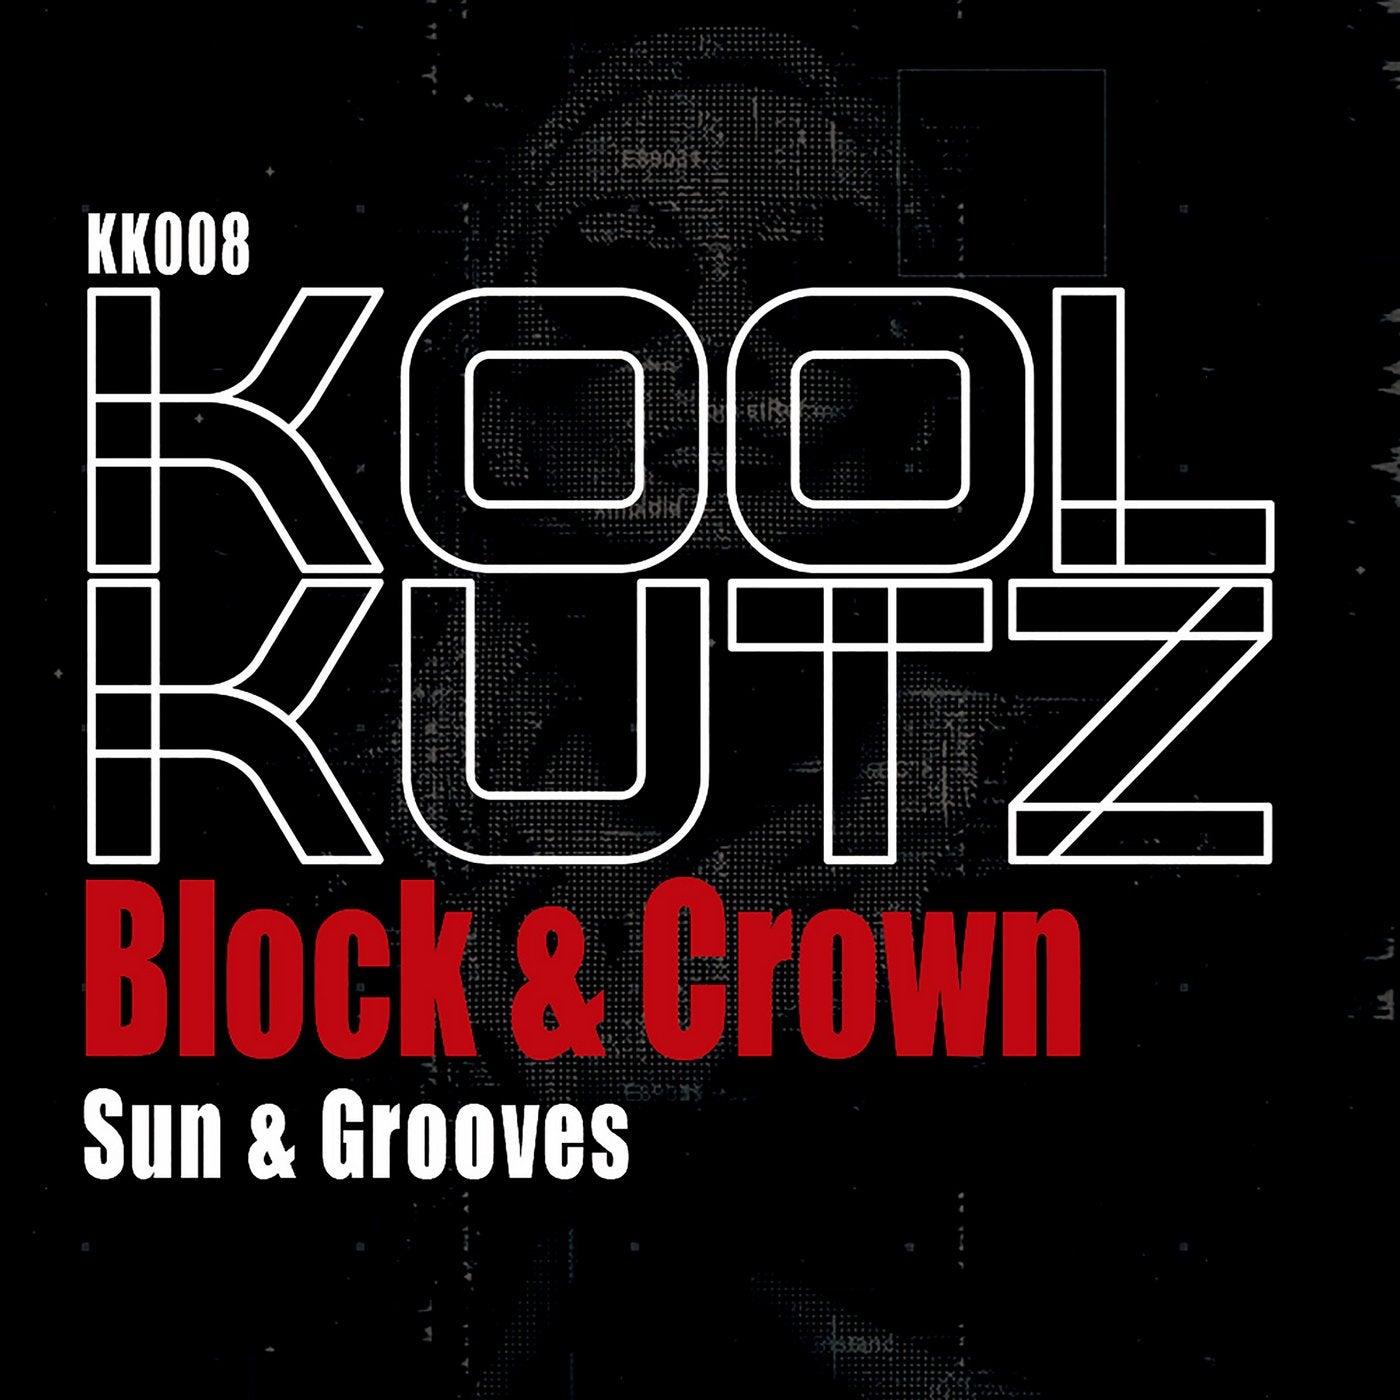 Sun & Grooves